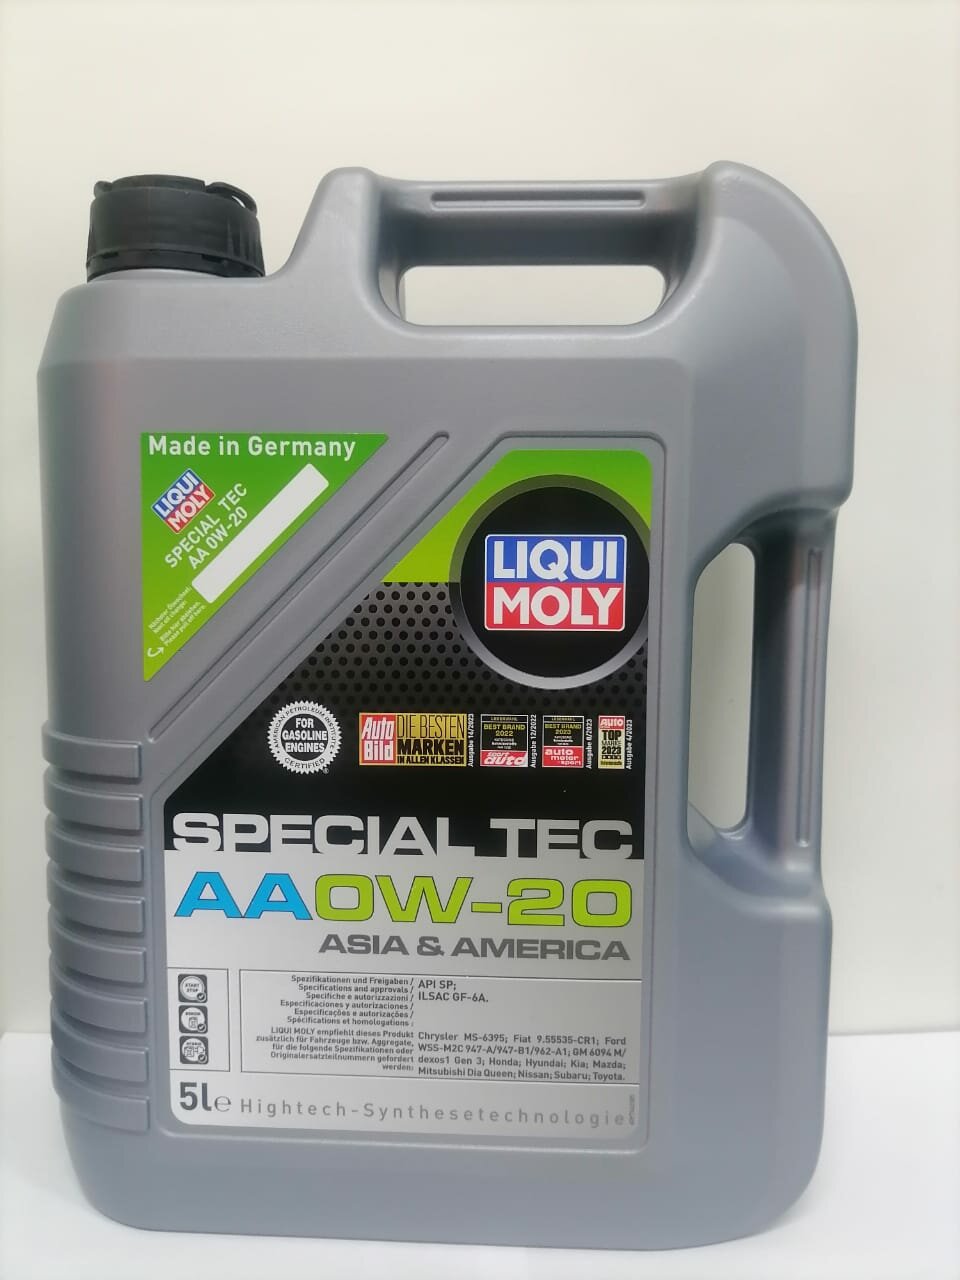 Моторное масло Liqui Moly Special Tec AA 0W-20, 5л, артикул 6739